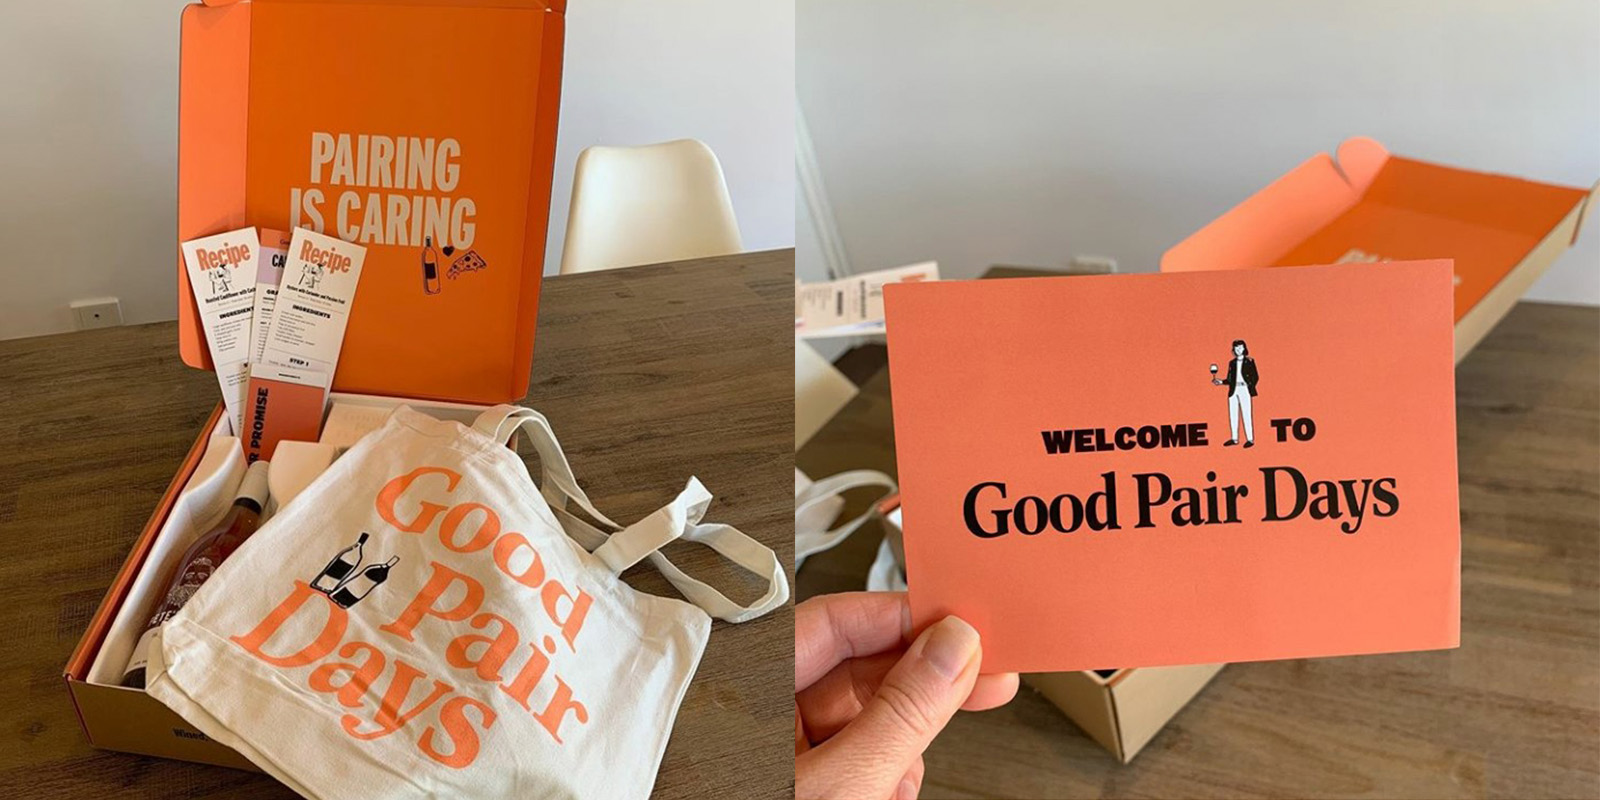 Caja de color naranja abierta con productos Good Pair Days abierta con el mensaje ‘PAIRING IS CARING’ en la tapa interior. Incluye una bolsa tipo tote beige, una botella de vino y dos tarjetas de recetas. Diseño colorido y creativo.